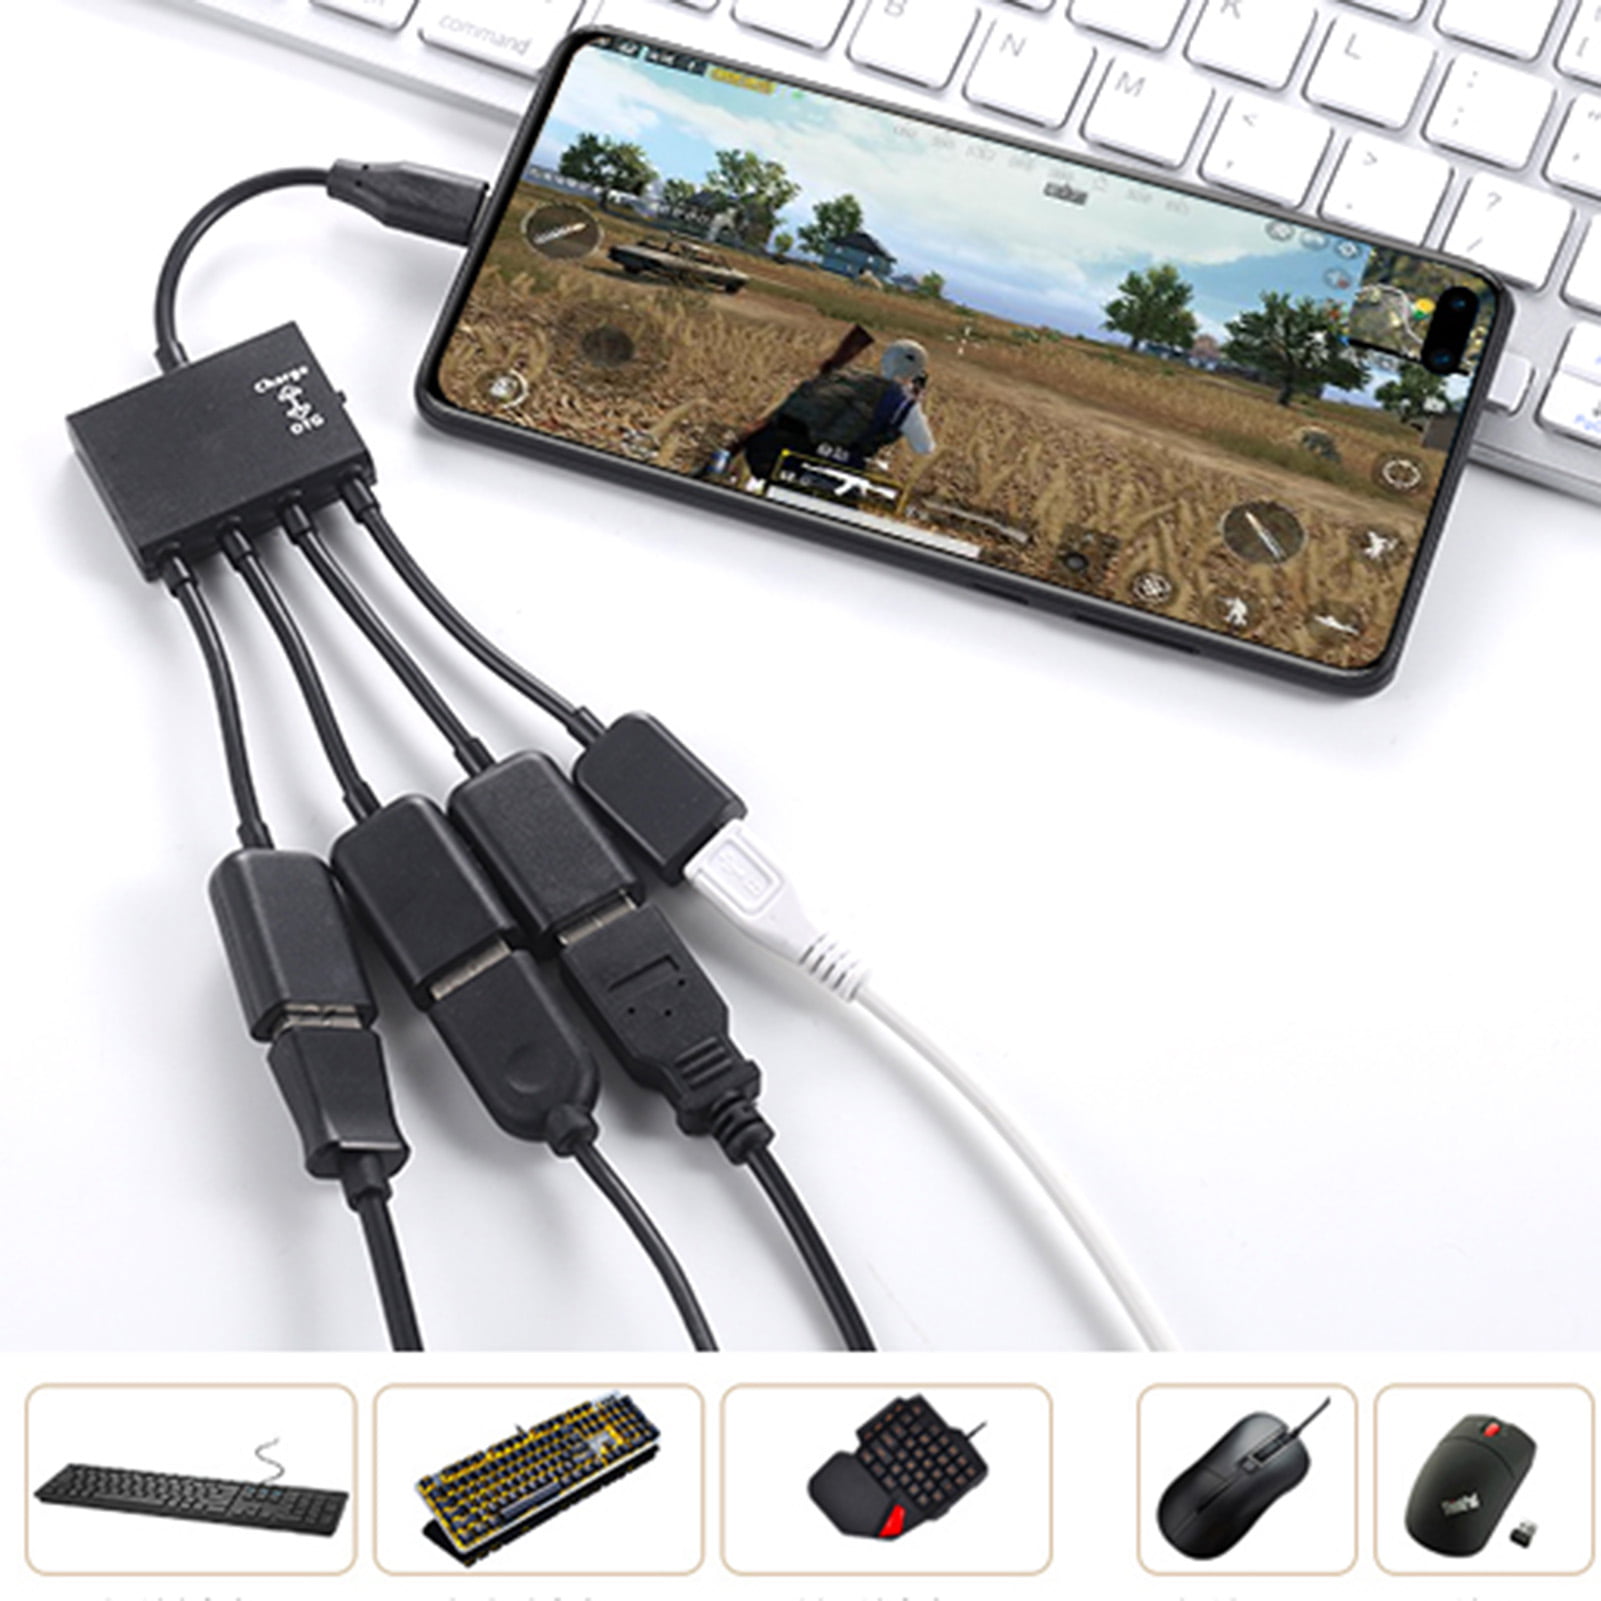 USB OTG Cable Huawei MediaPad X1 7D-501L, MediaPad T5 10 WiFi - OTG Adapter